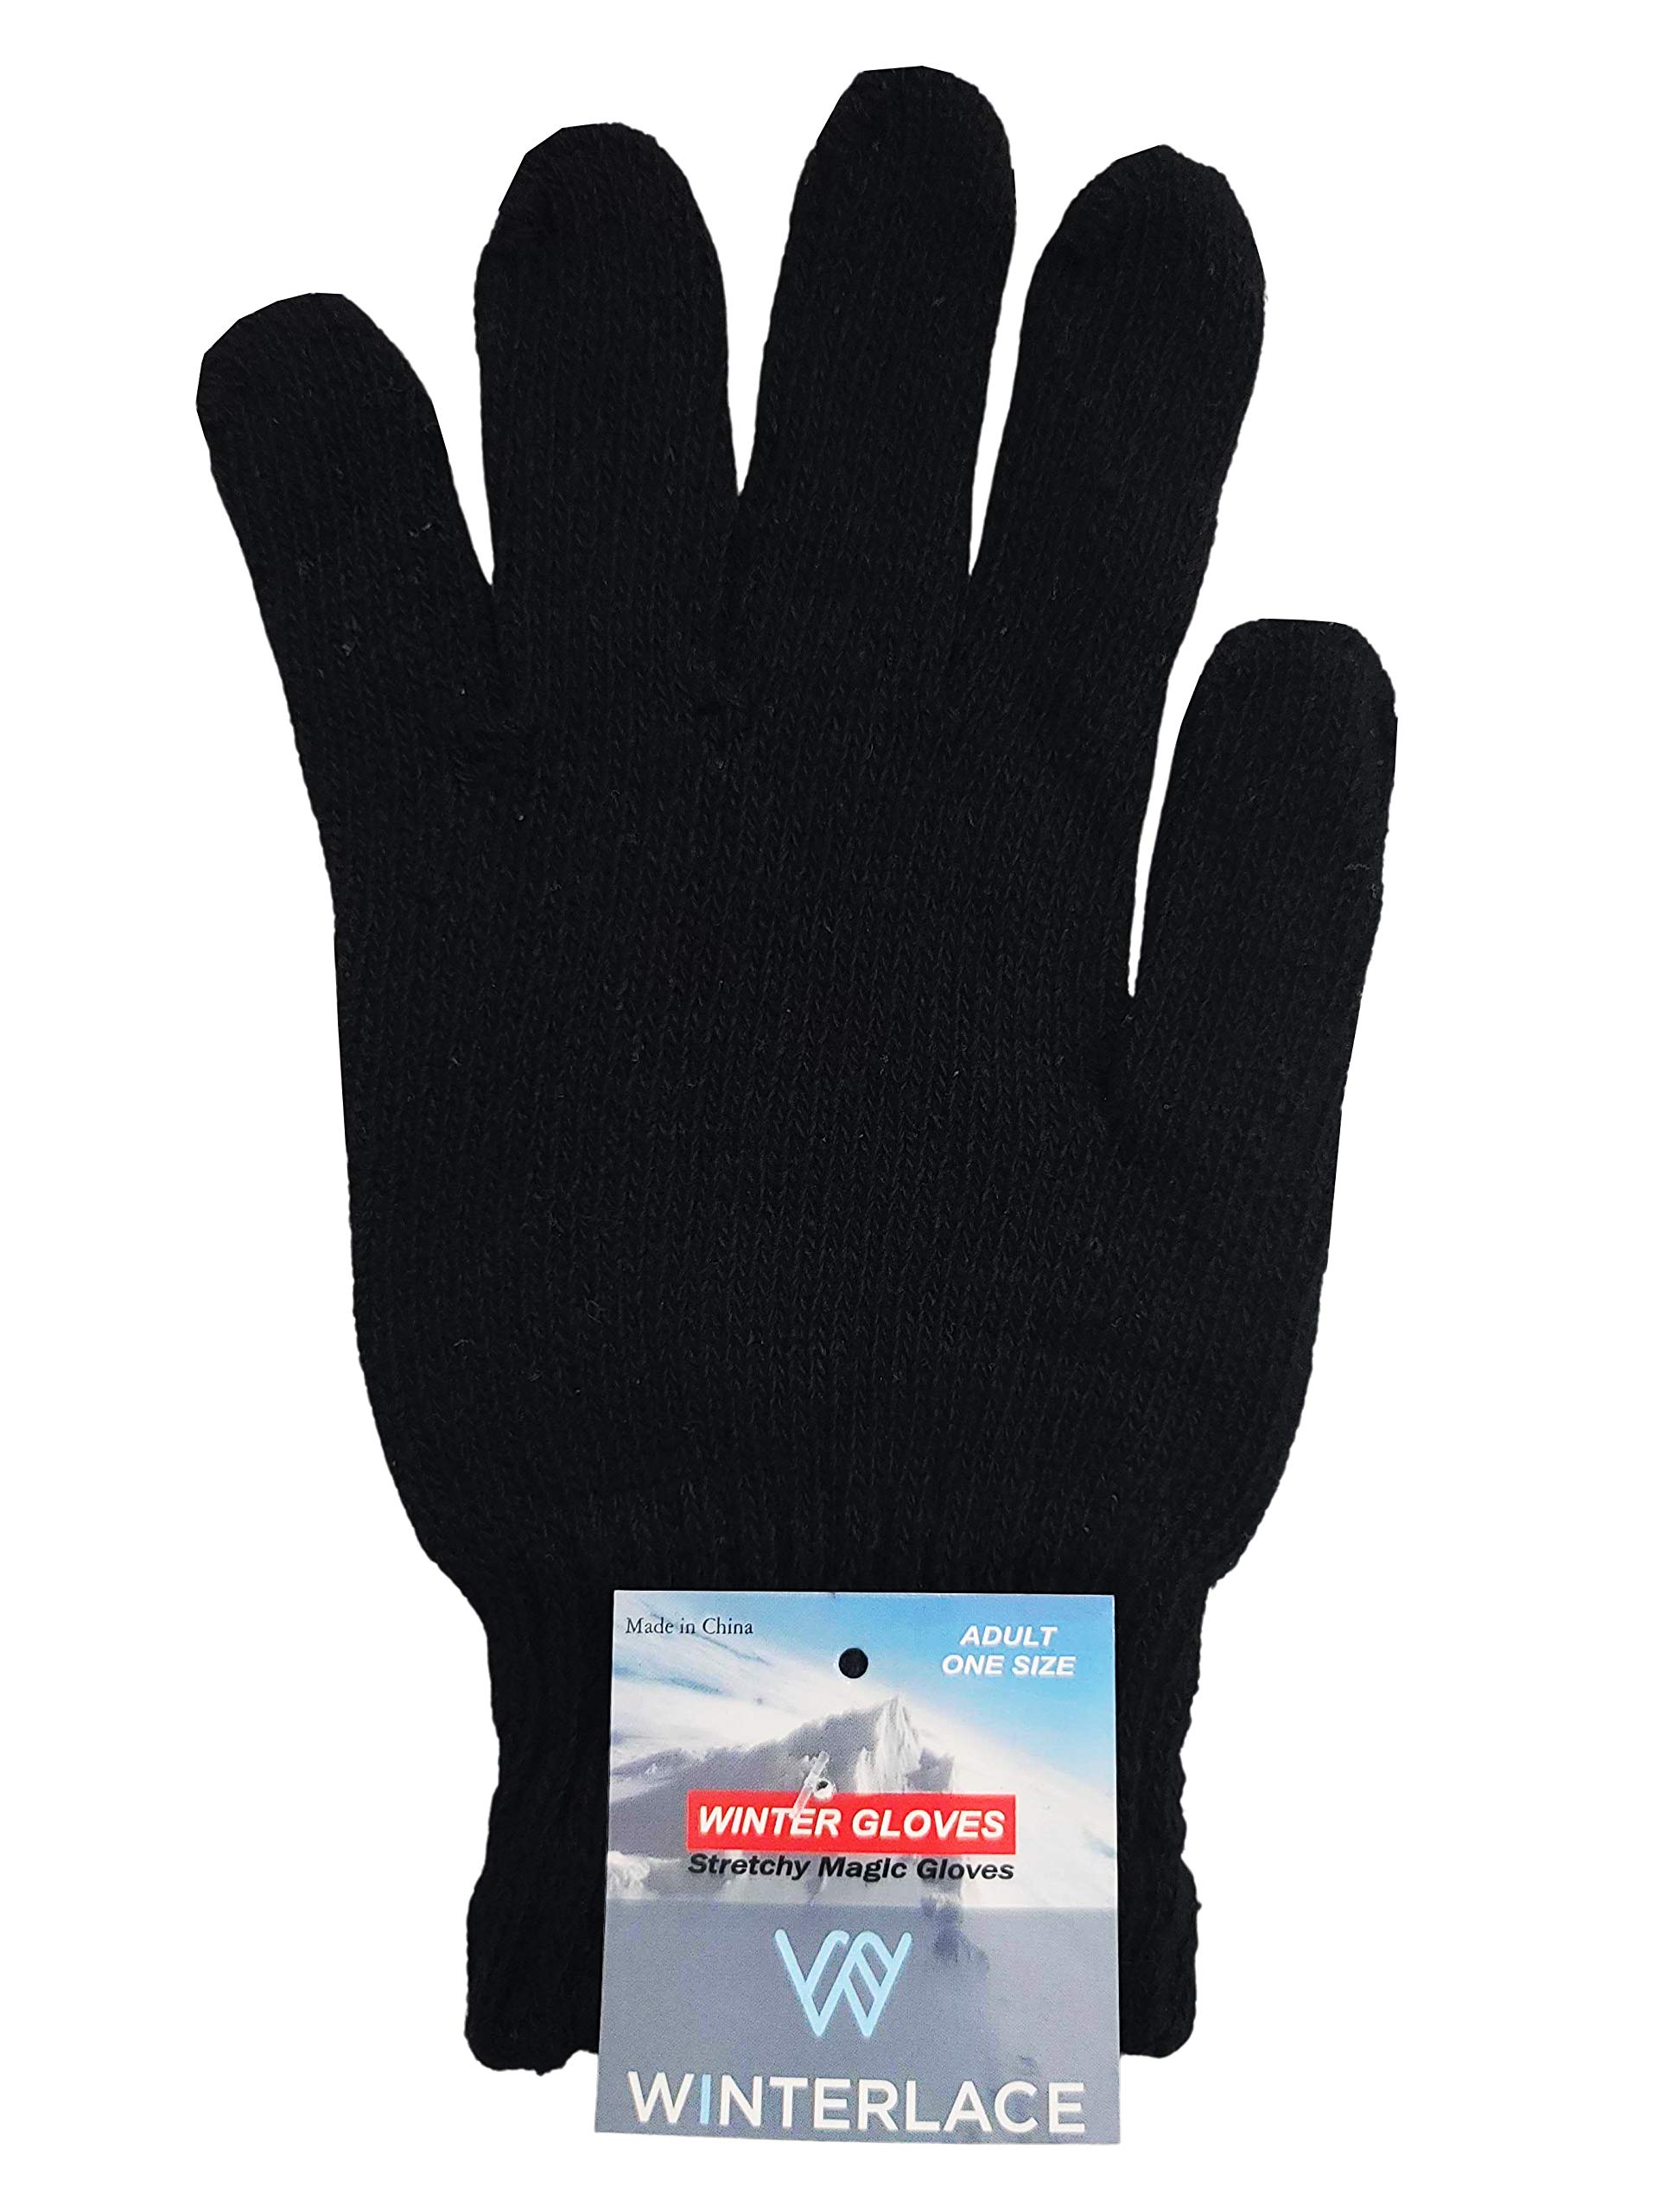 24x Winter Beanies & Gloves Combo Pack, Bulk Pack for Men Women, Warm Cozy Gift (Assorted #1)